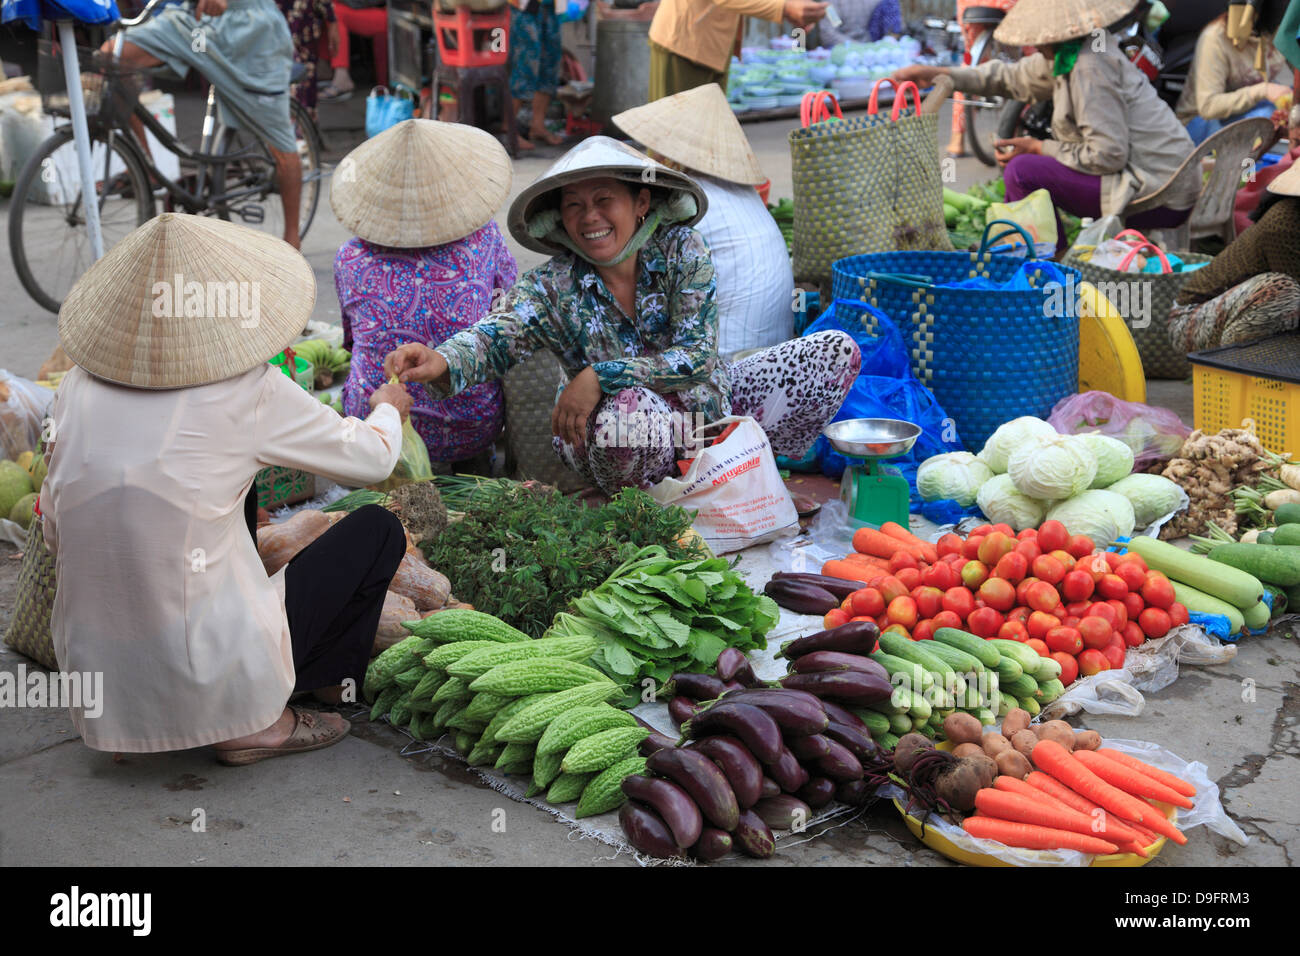 Mercato, Tra su, il Delta del Mekong, Vinh Long Provincia, Vietnam, Indocina, sud-est asiatico Foto Stock